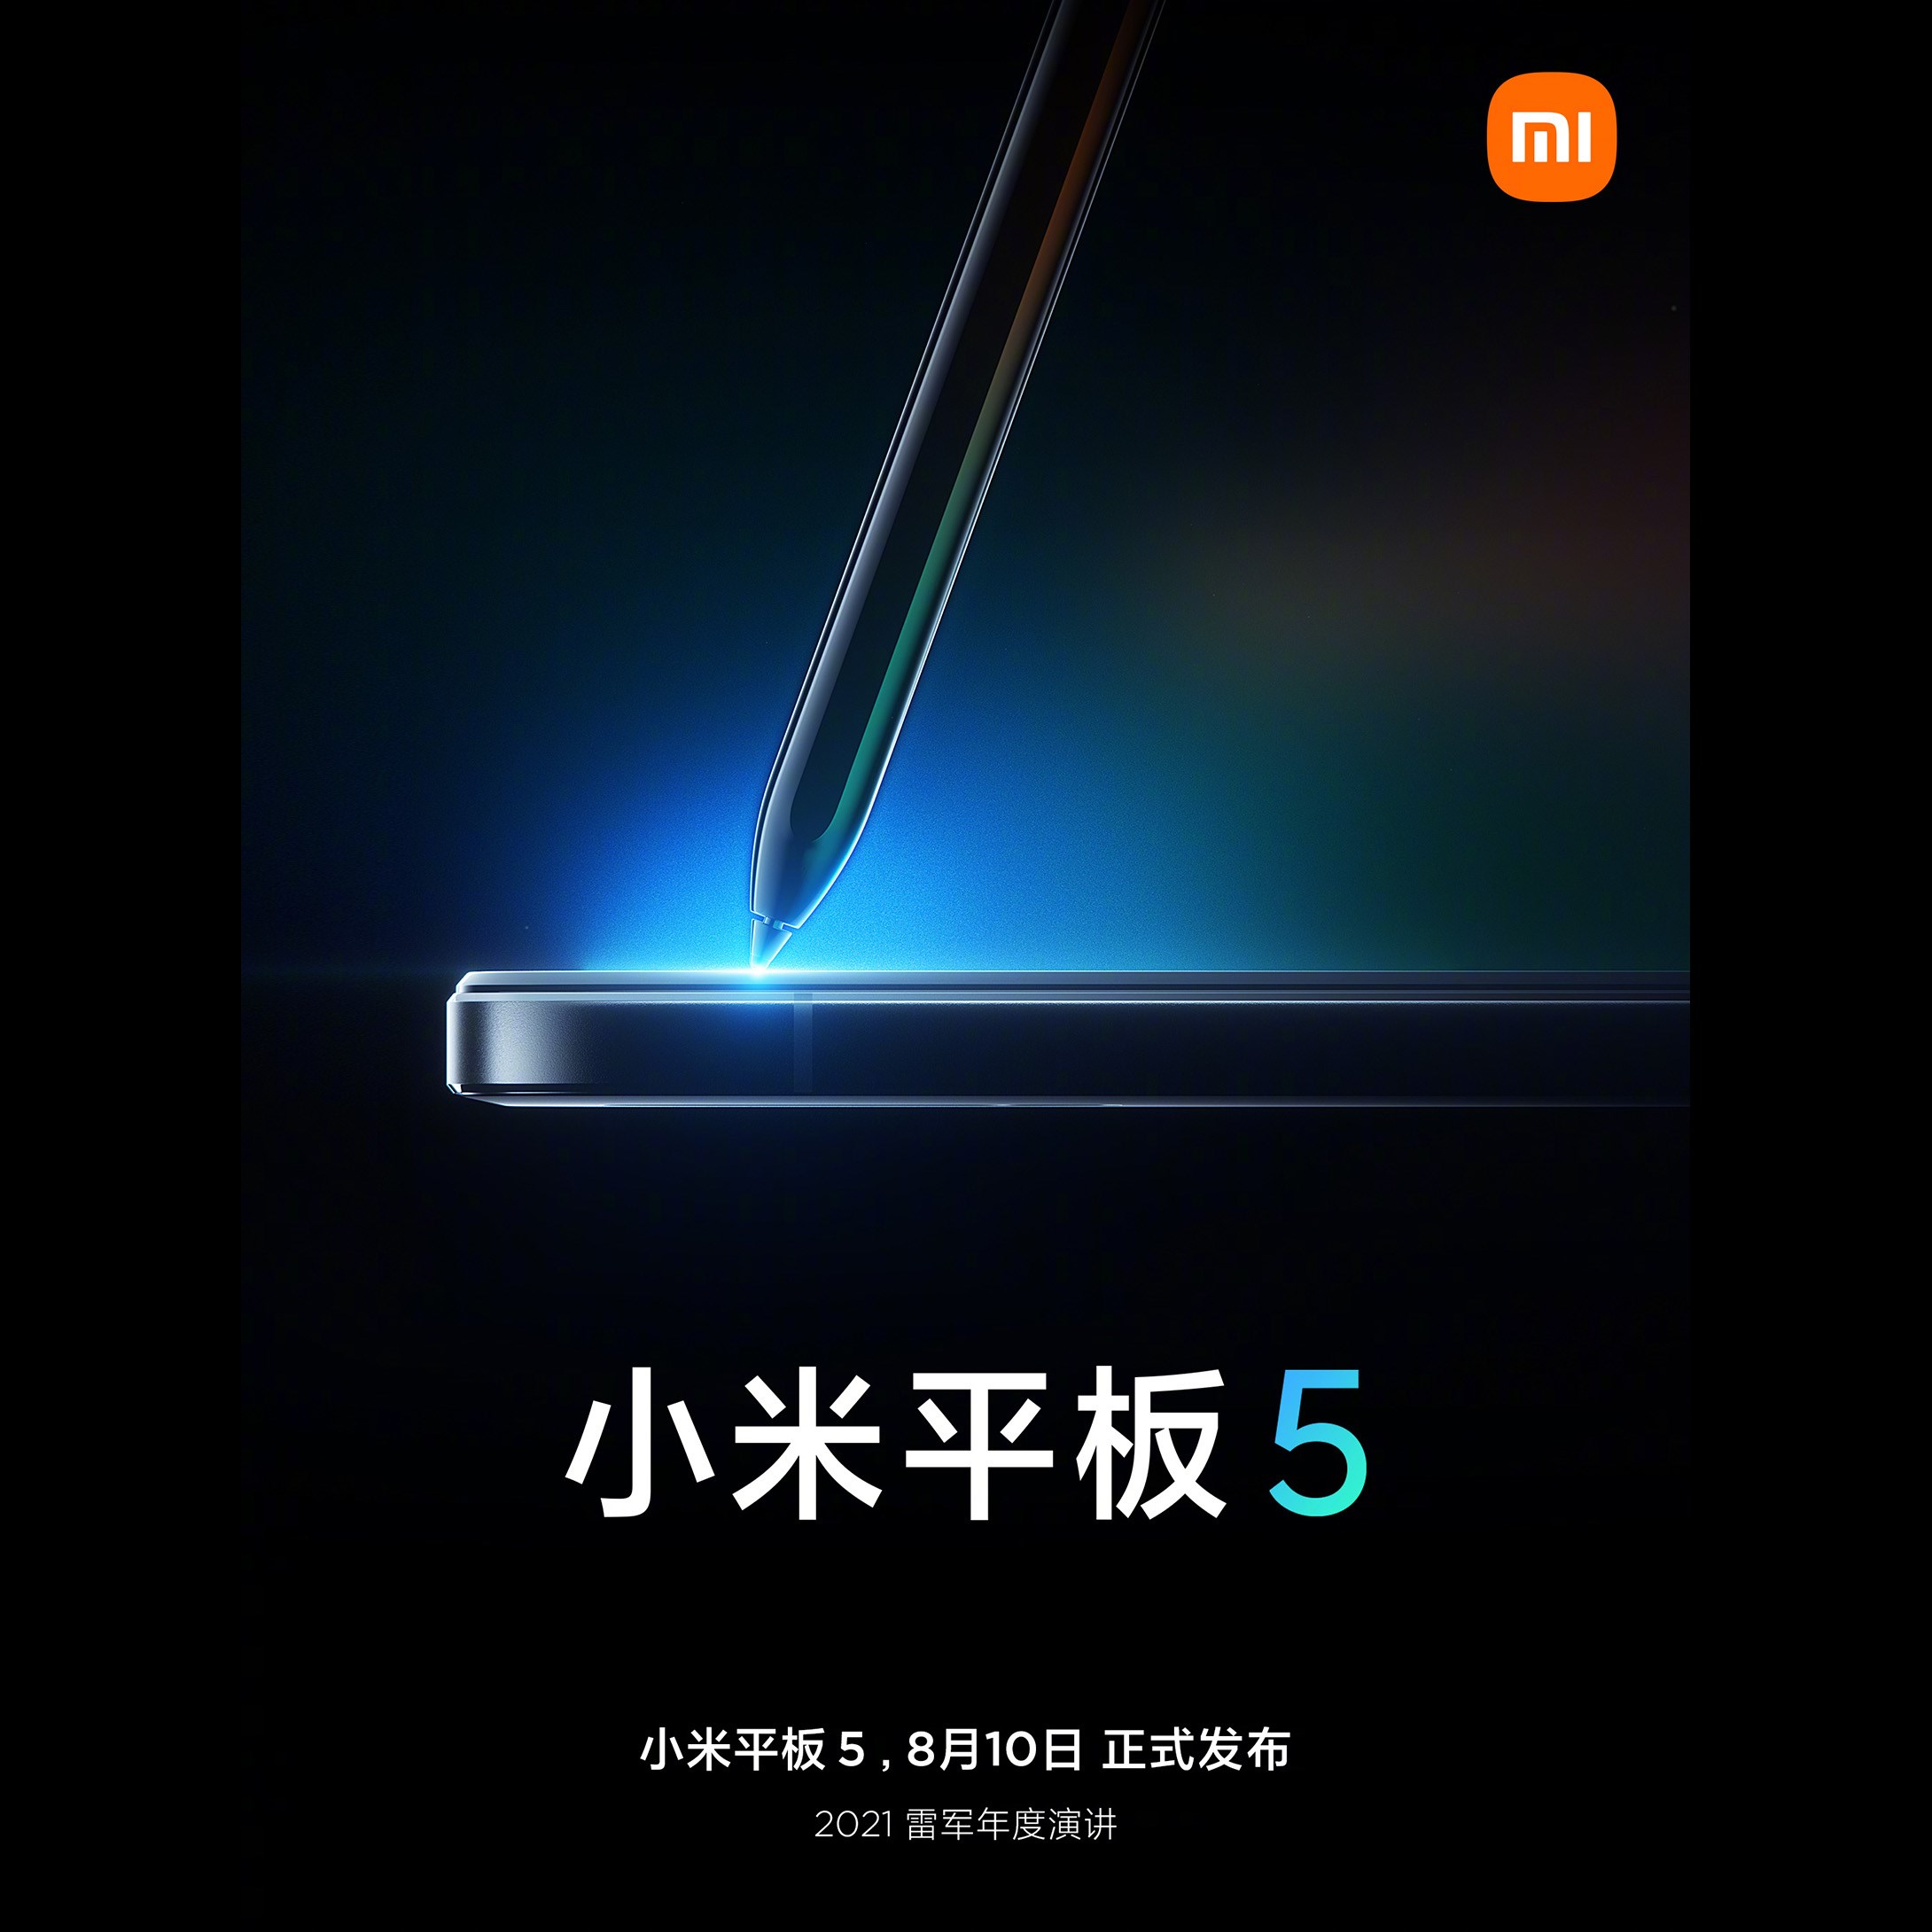 Xiaomi Mi Pad 5'in kalem desteğiyle geleceği onaylandı